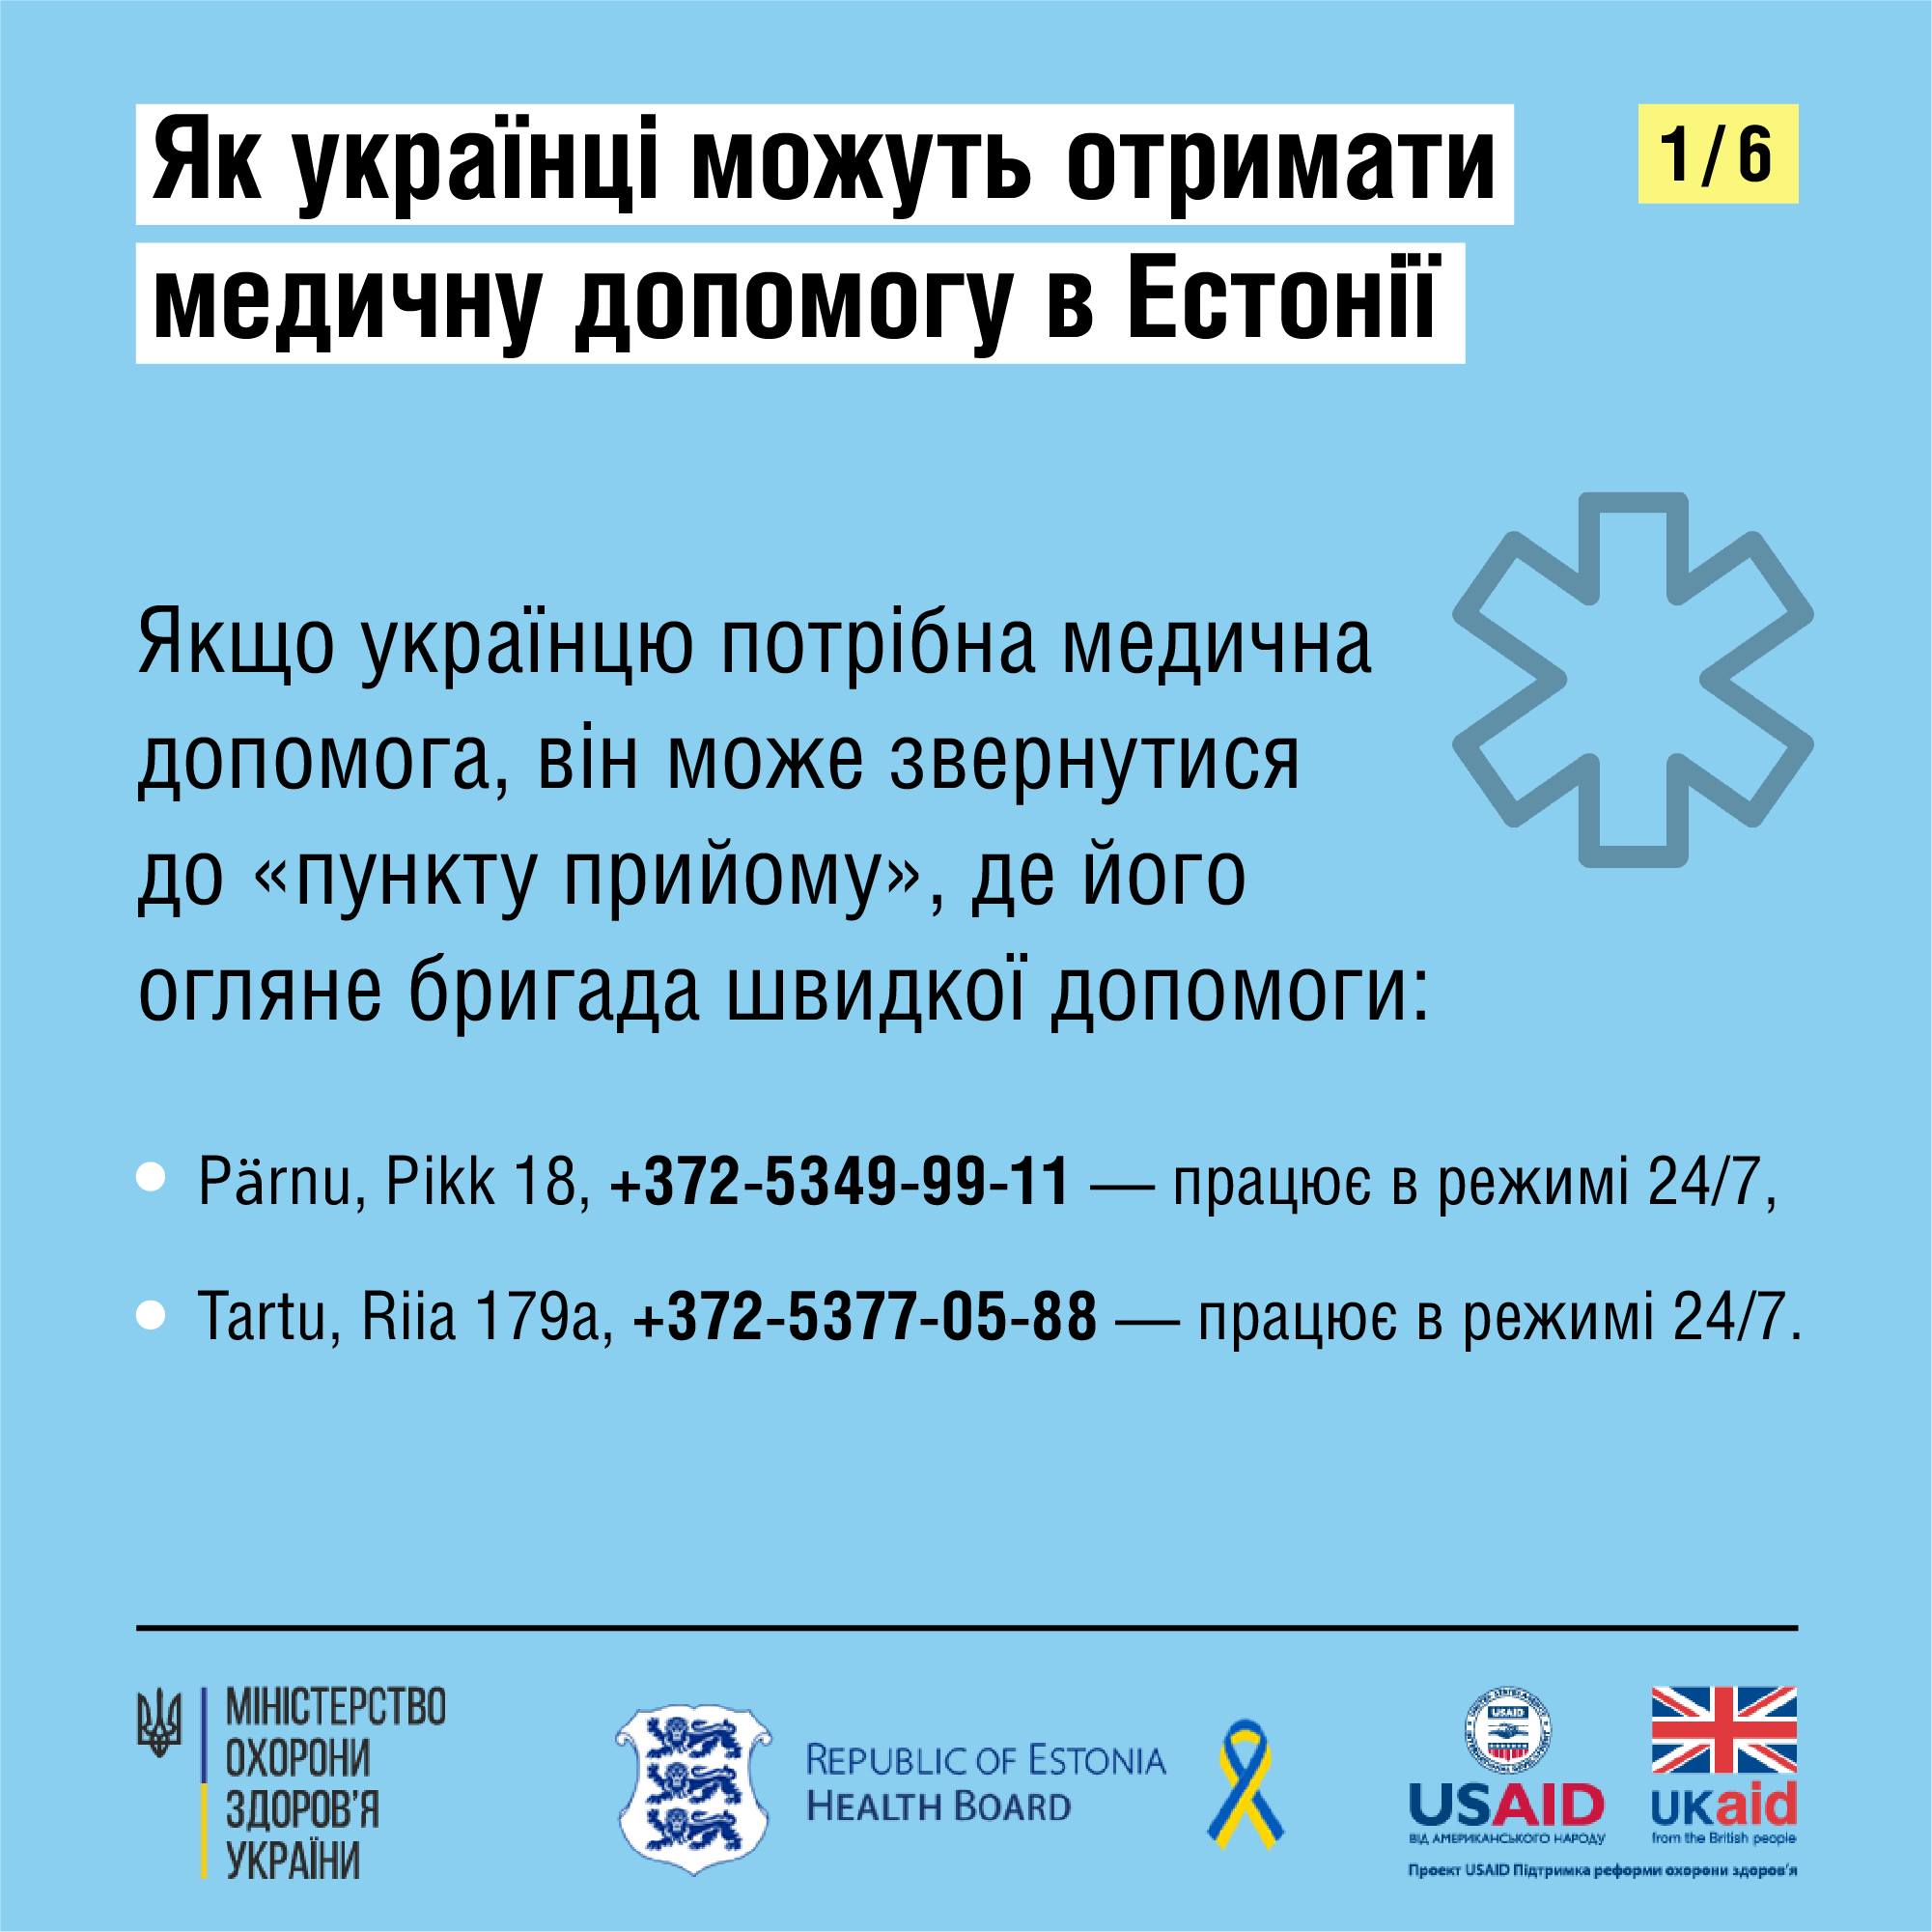 Как украинцам получить медицинскую помощь в Эстонии — фото 1